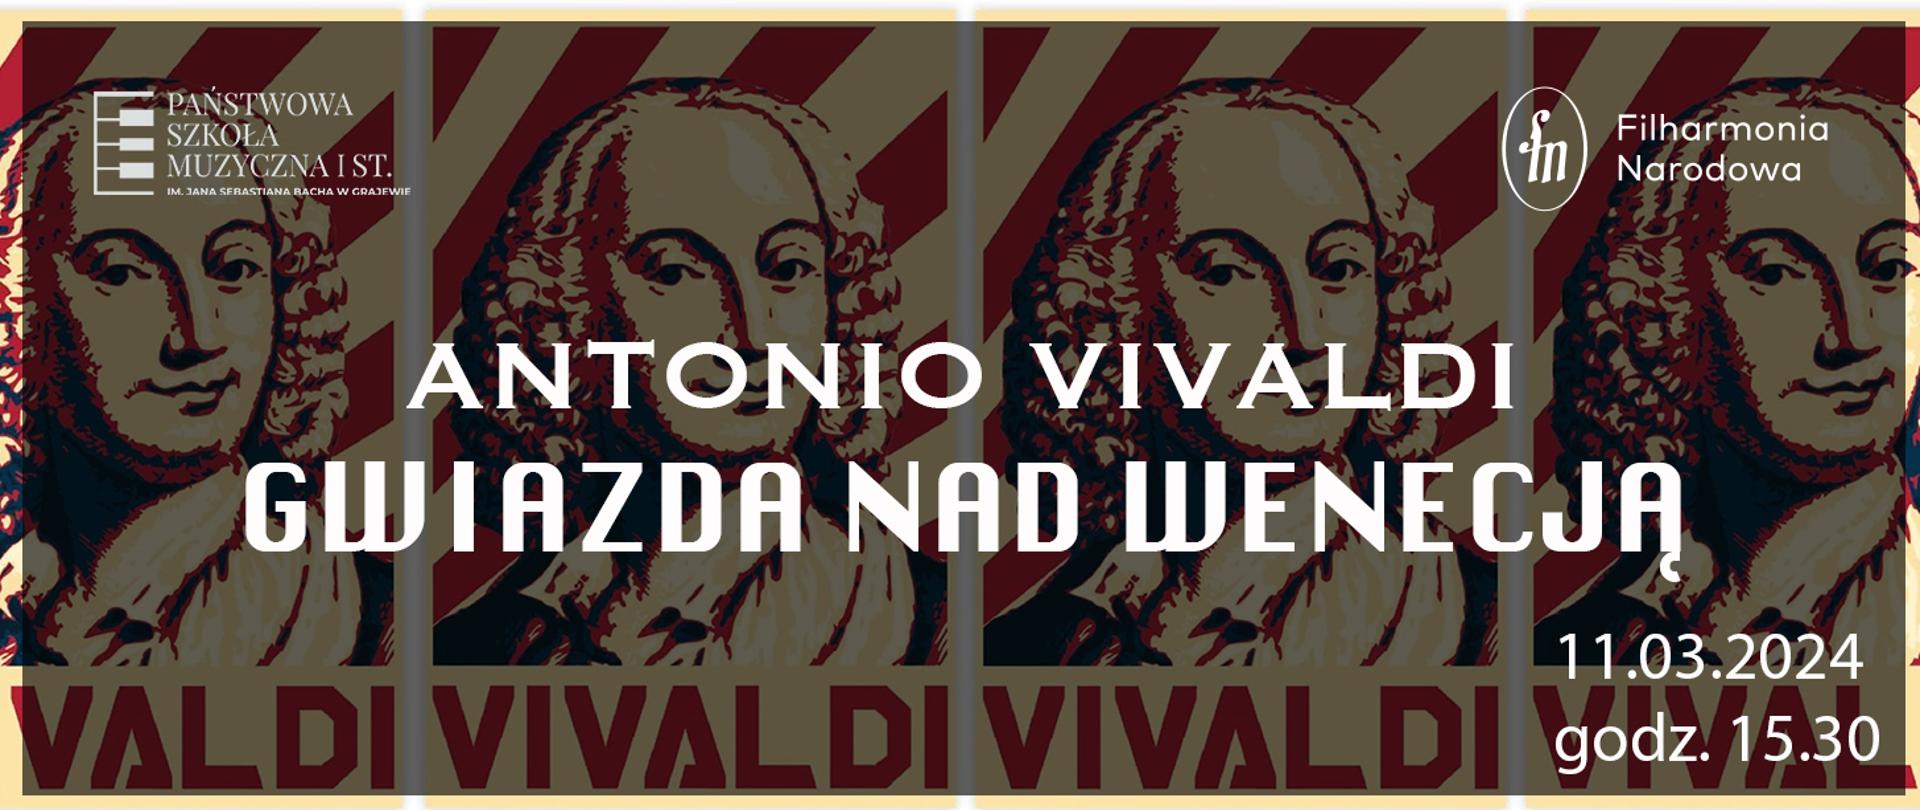 Na tle czterech wizerunków Antonio Vivaldiego w stylu retro białe napisy Antonio Vivaldi Gwiazda nad Wenecją. W lewym górnym rogu logo szkoły, w prawym górnym rogu logo filharmonii narodowej, w prawym dolnym rogu data i godzina. 